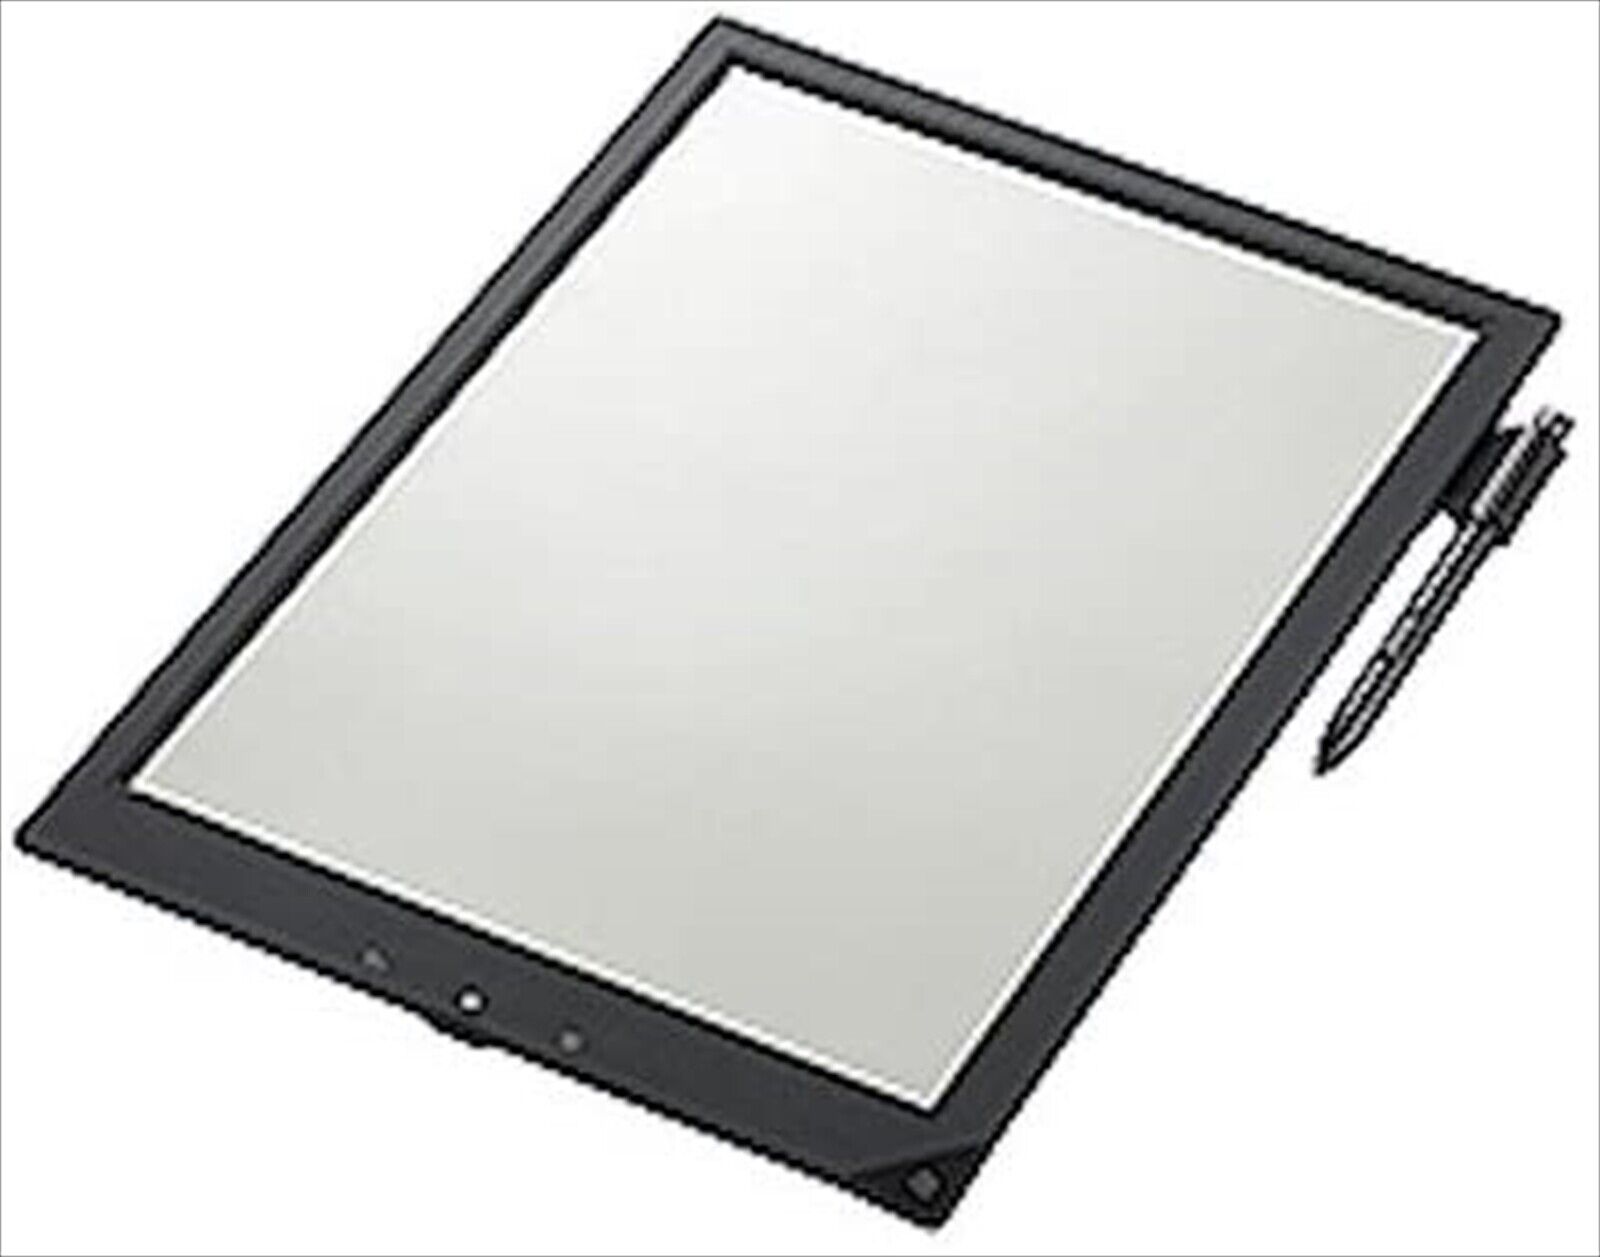 Sony Digital Paper DPT-S1 Black 13.3 inch Japan Import Good Condition Goedkoop, originele garantie